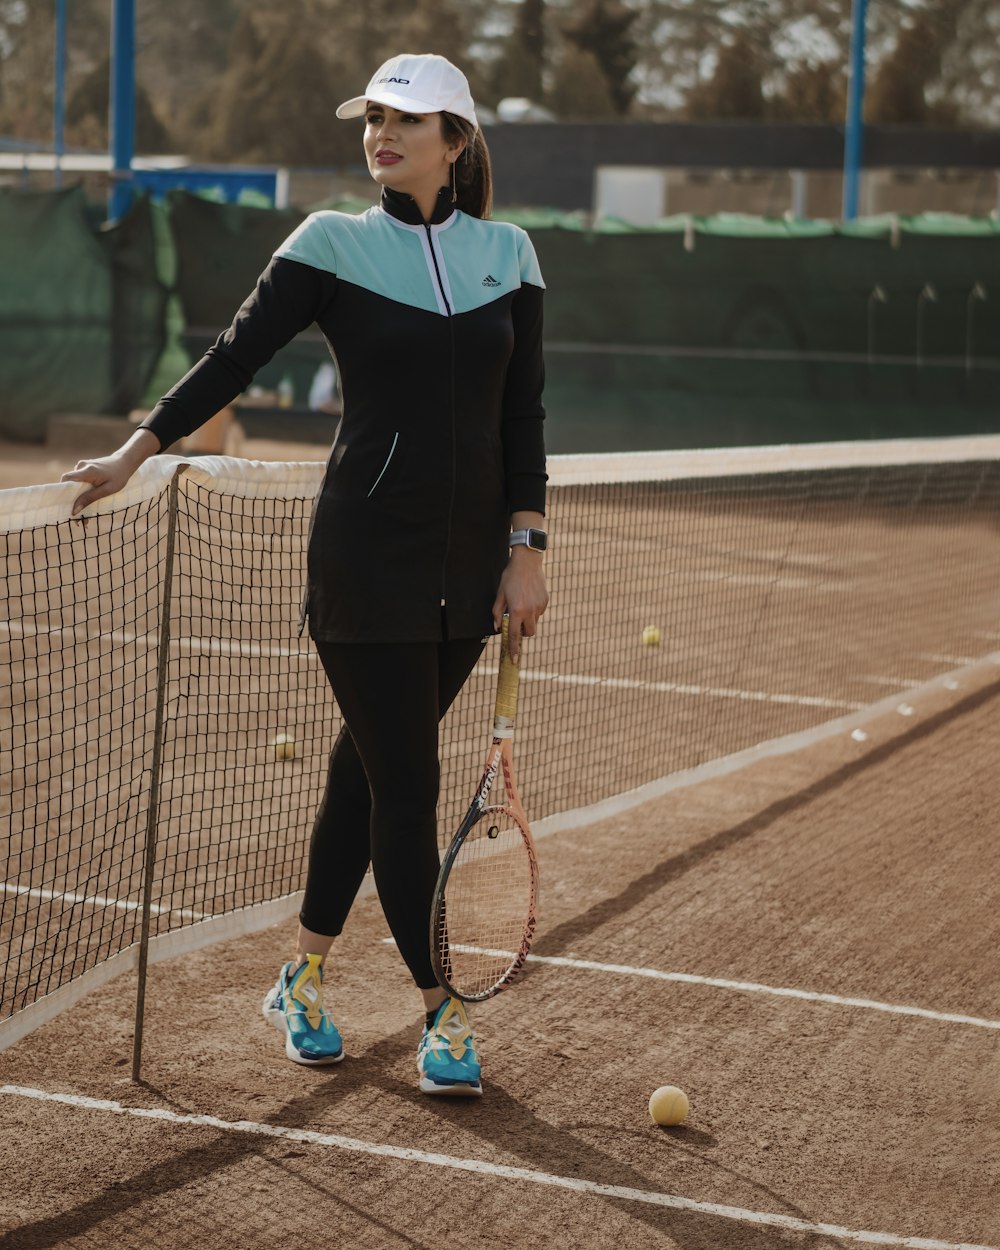 Foto mujer con camisa de manga larga y pantalones con de tenis Imagen Deporte gratis en Unsplash